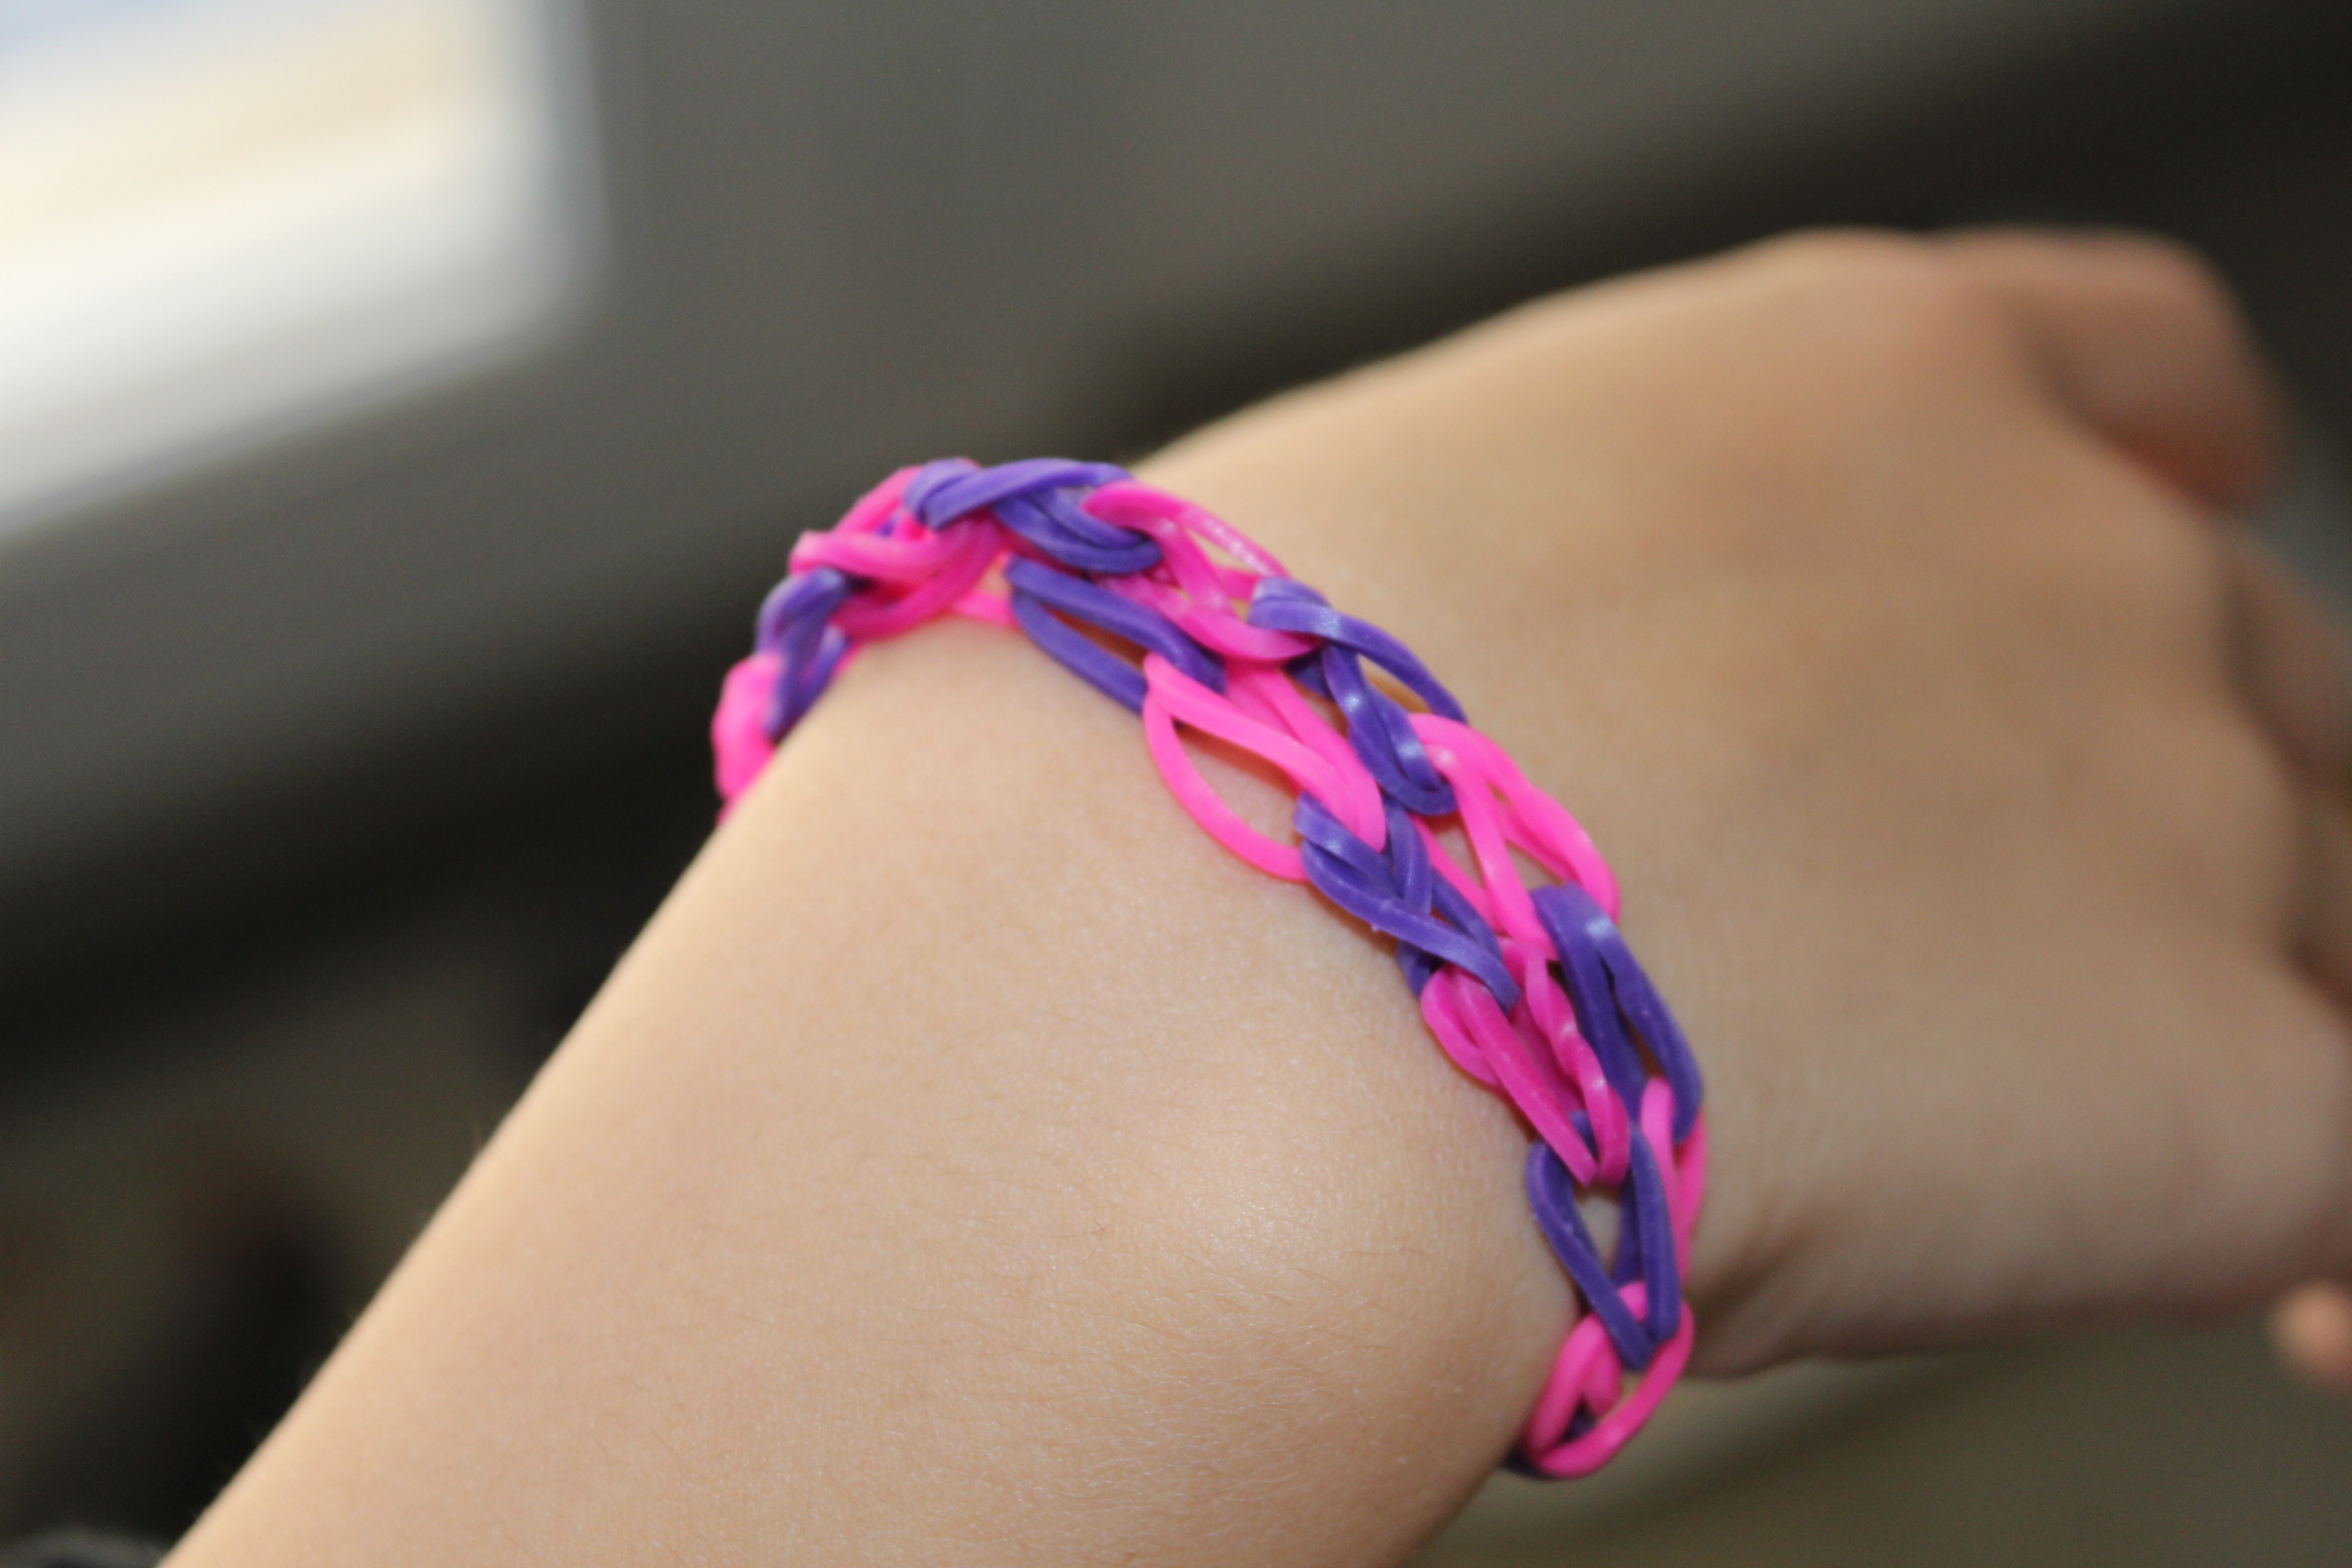 Cra-Z-loom : les bracelets élastiques à fabriquer soi-même ! Une idée, 1000  possibilités !